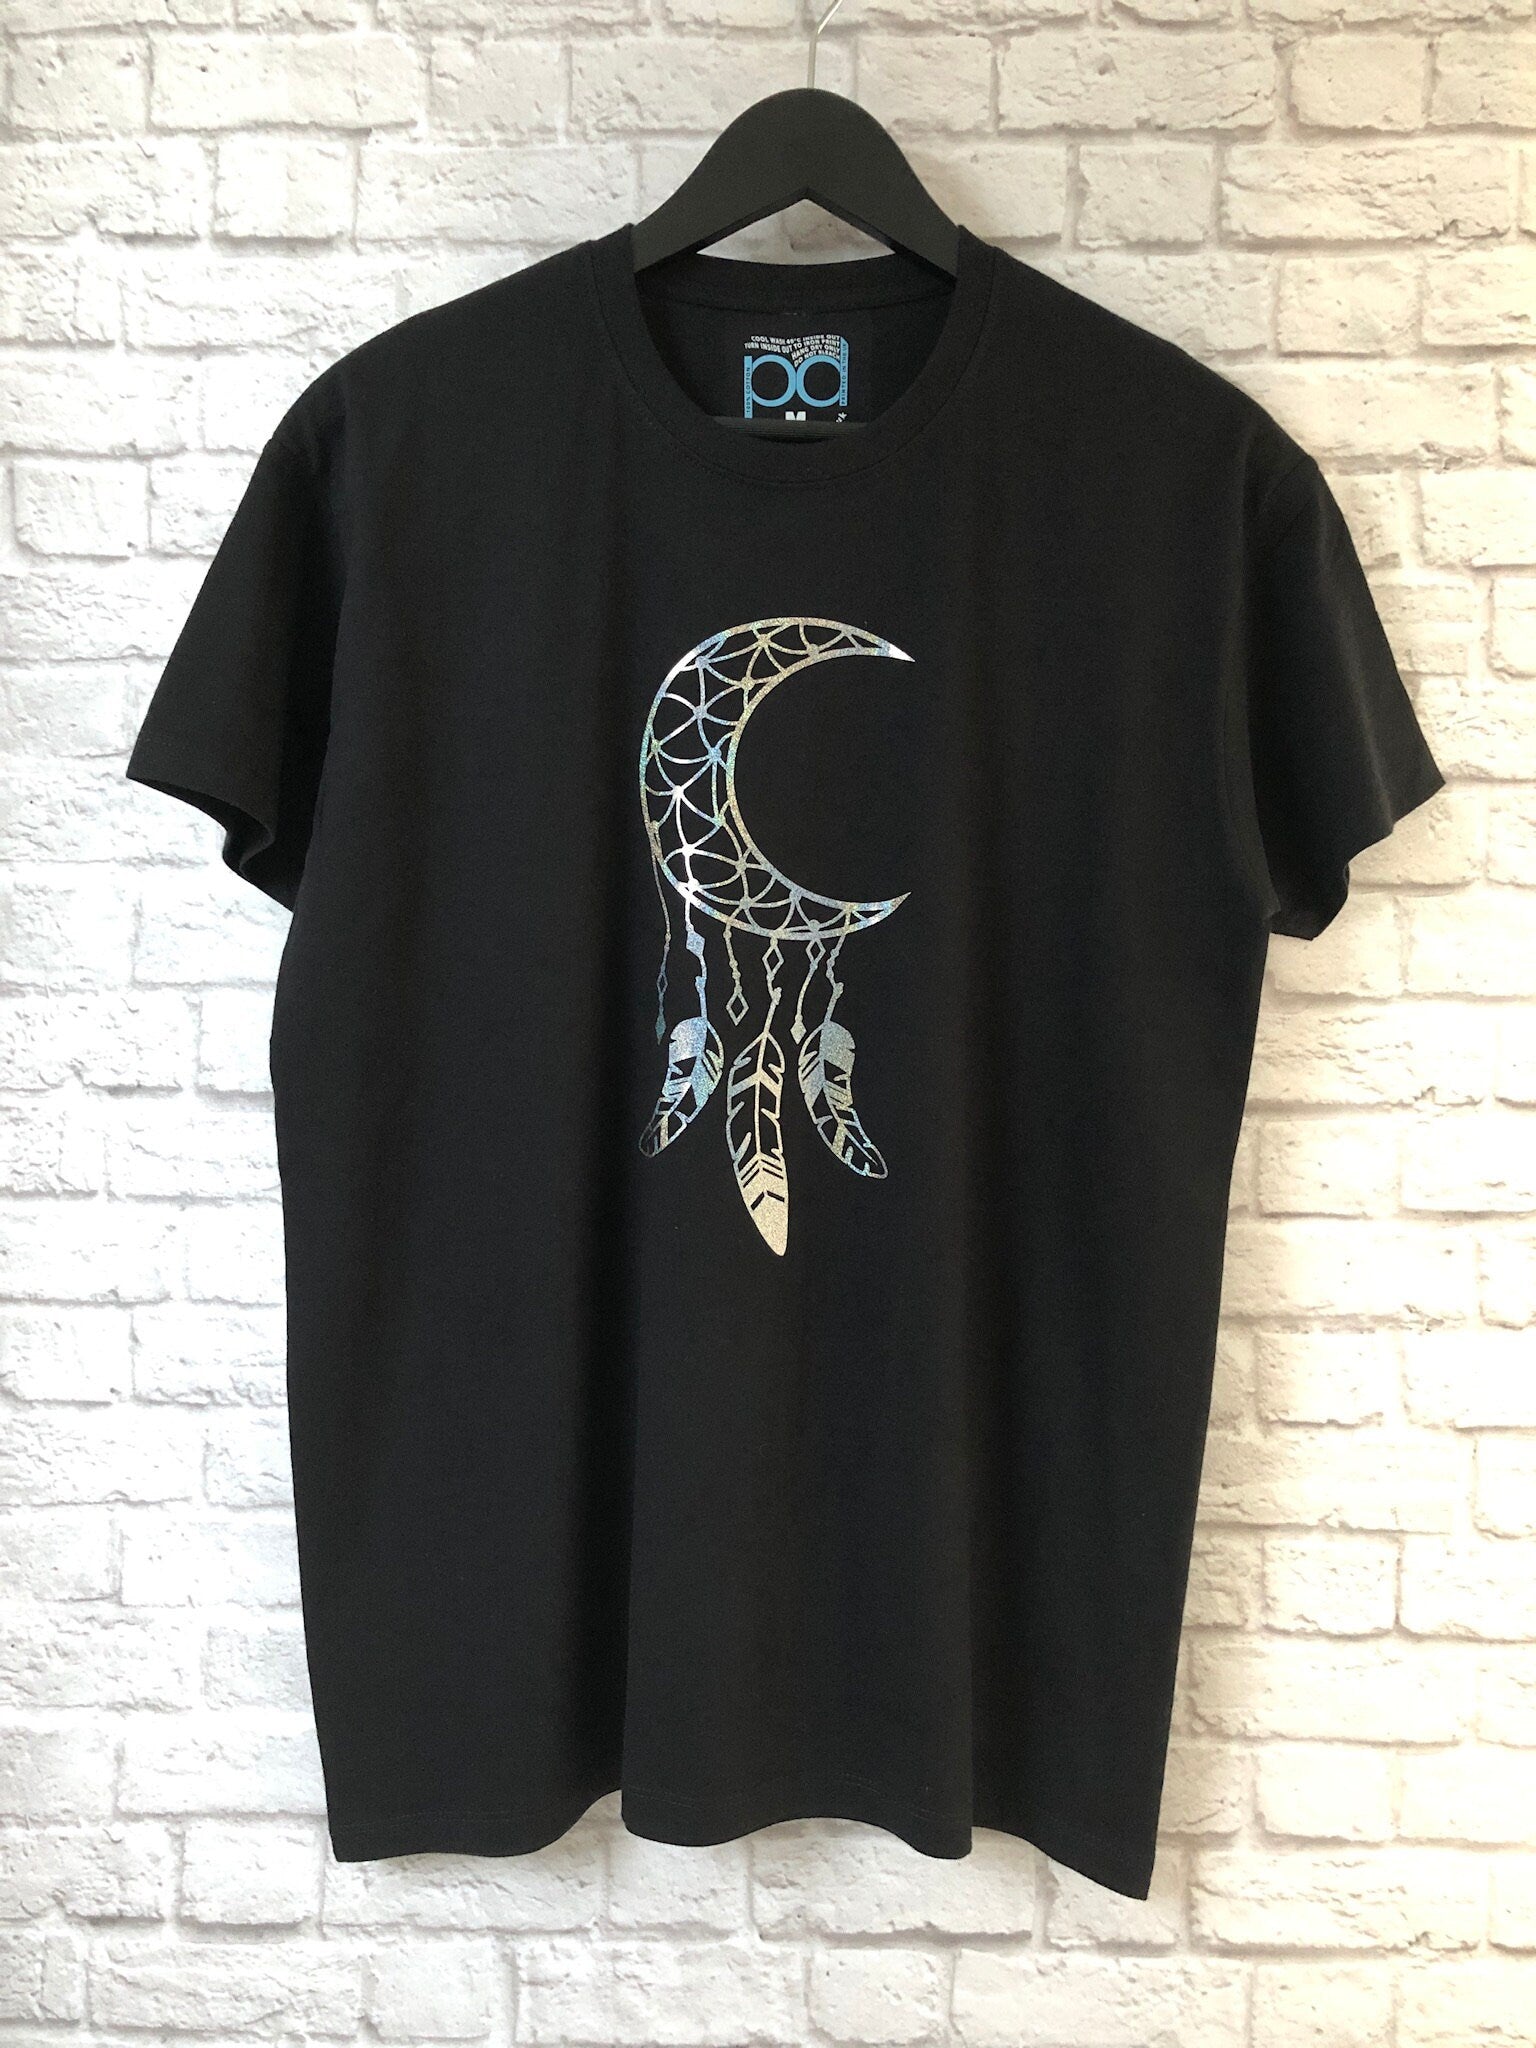 Dreamcatcher T Shirt, Boho Celestial Moon & Feathers Tee, Metallic Glittery Dream Catcher Birthday Gift T-Shirt Unisex Tee Shirt Top